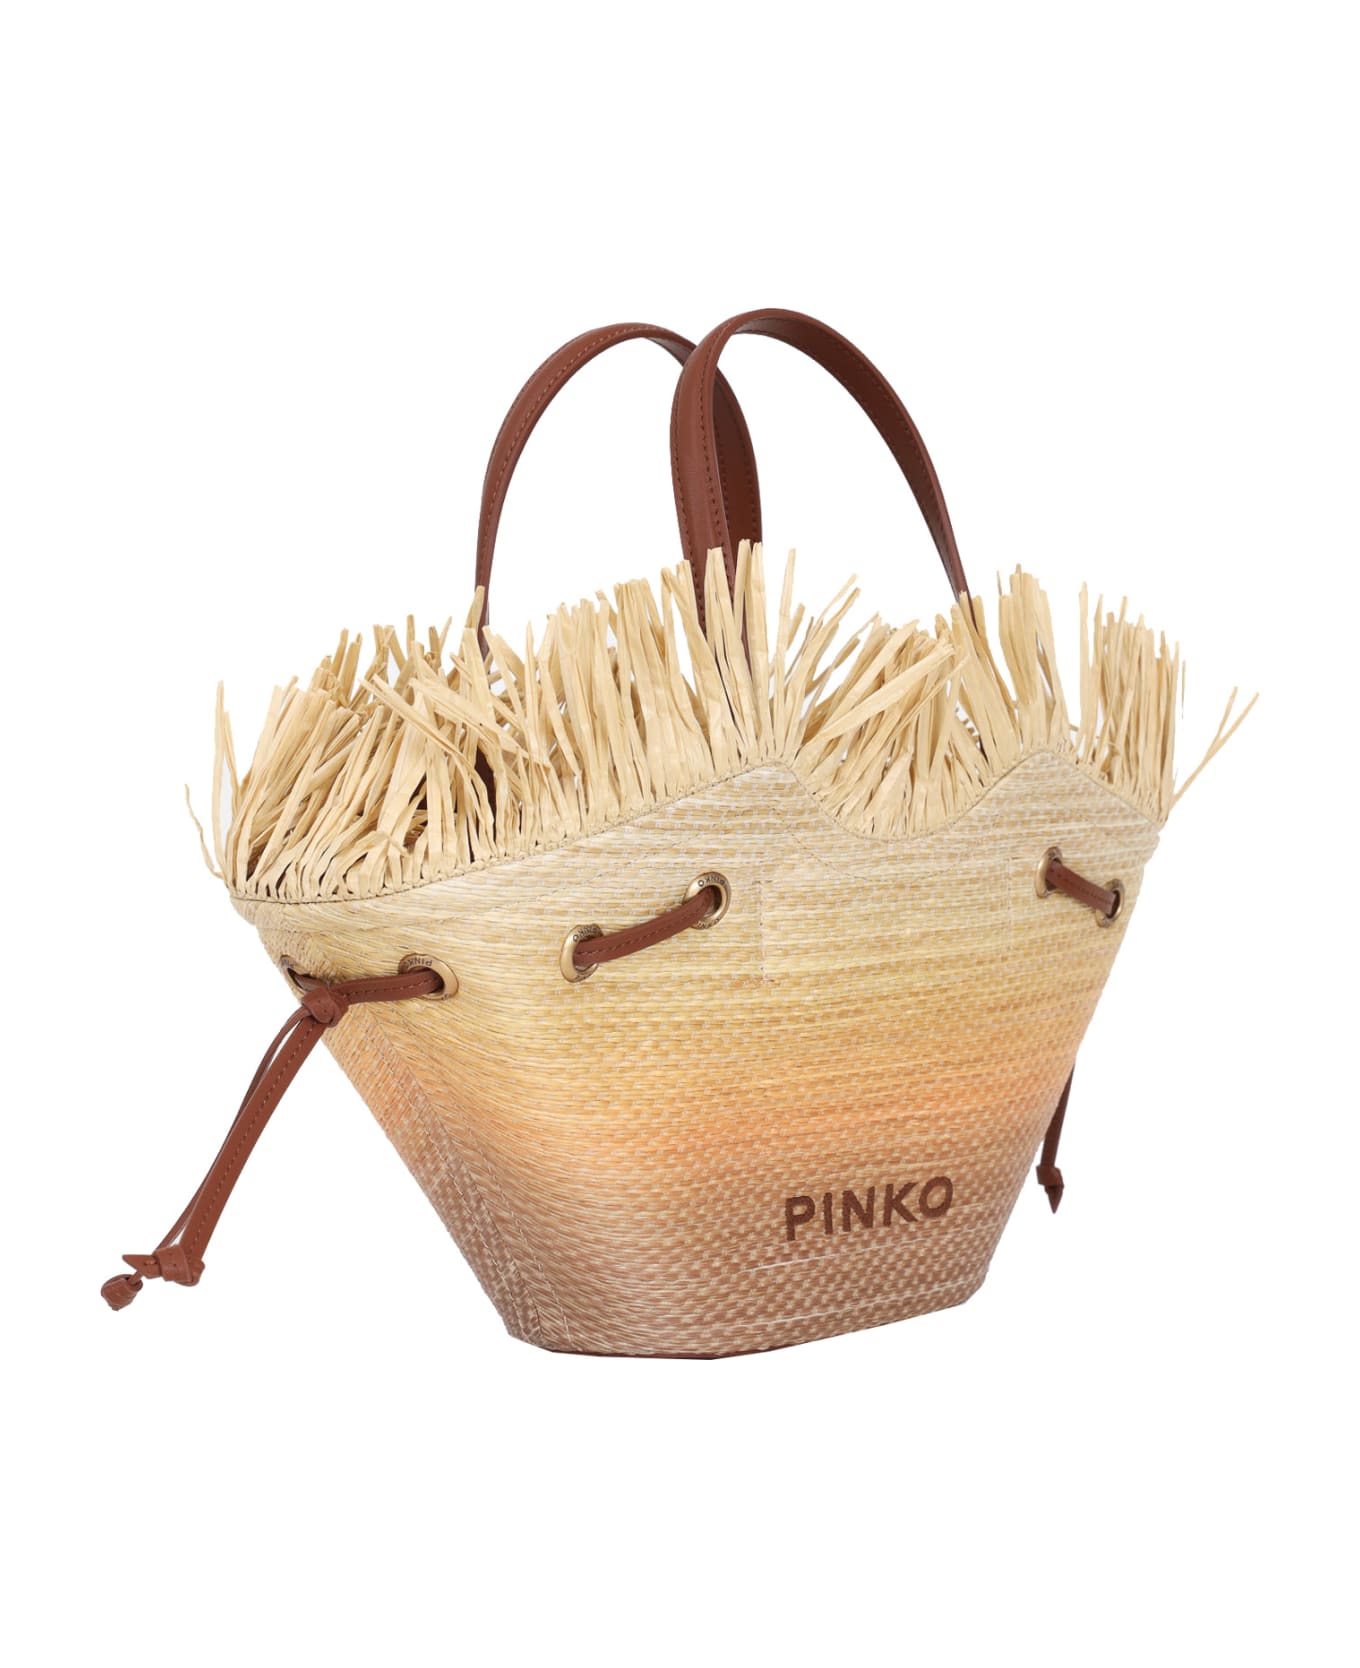 Pinko Handbag - Brown